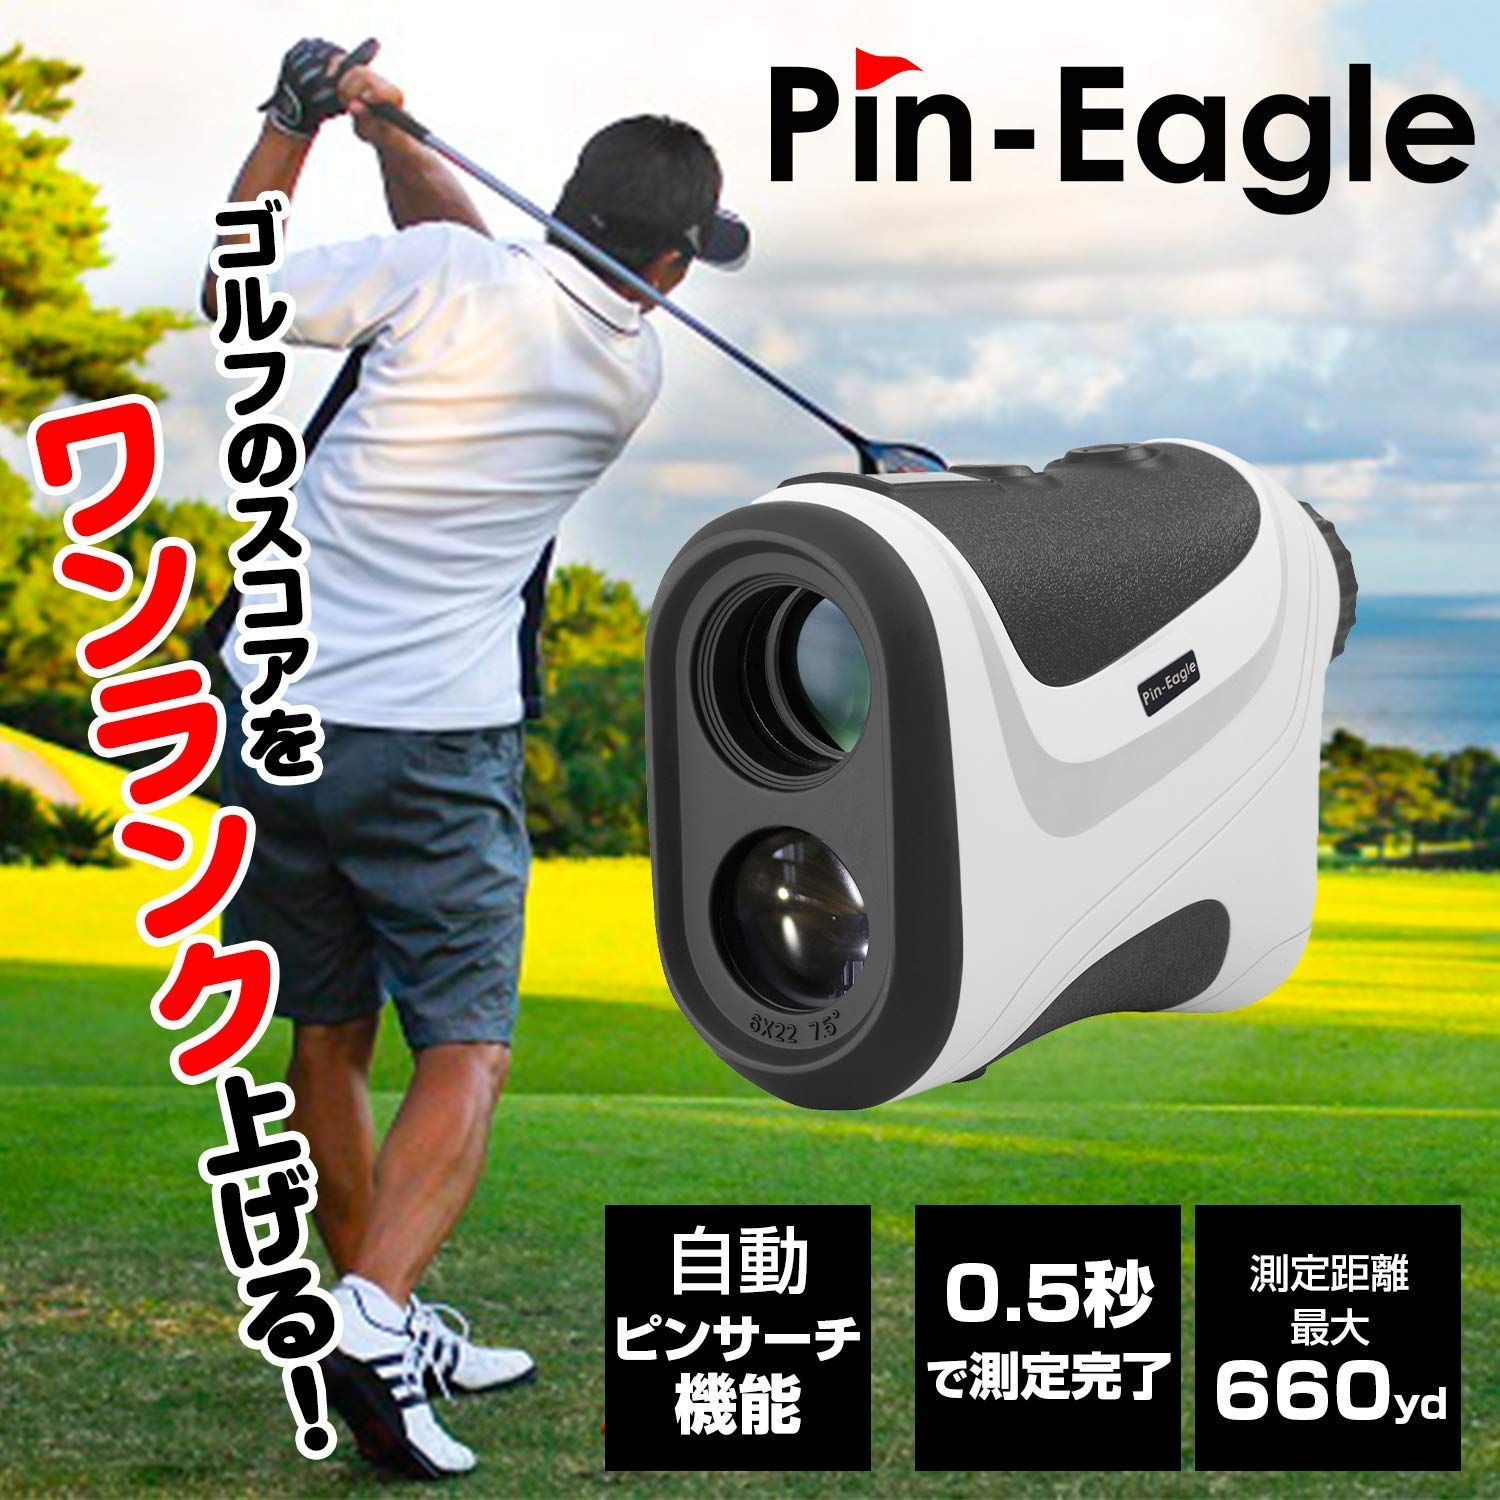 国内ブランド】Pin-Eagle(ピンイーグル) ゴルフ用レーザー距離計 660yd